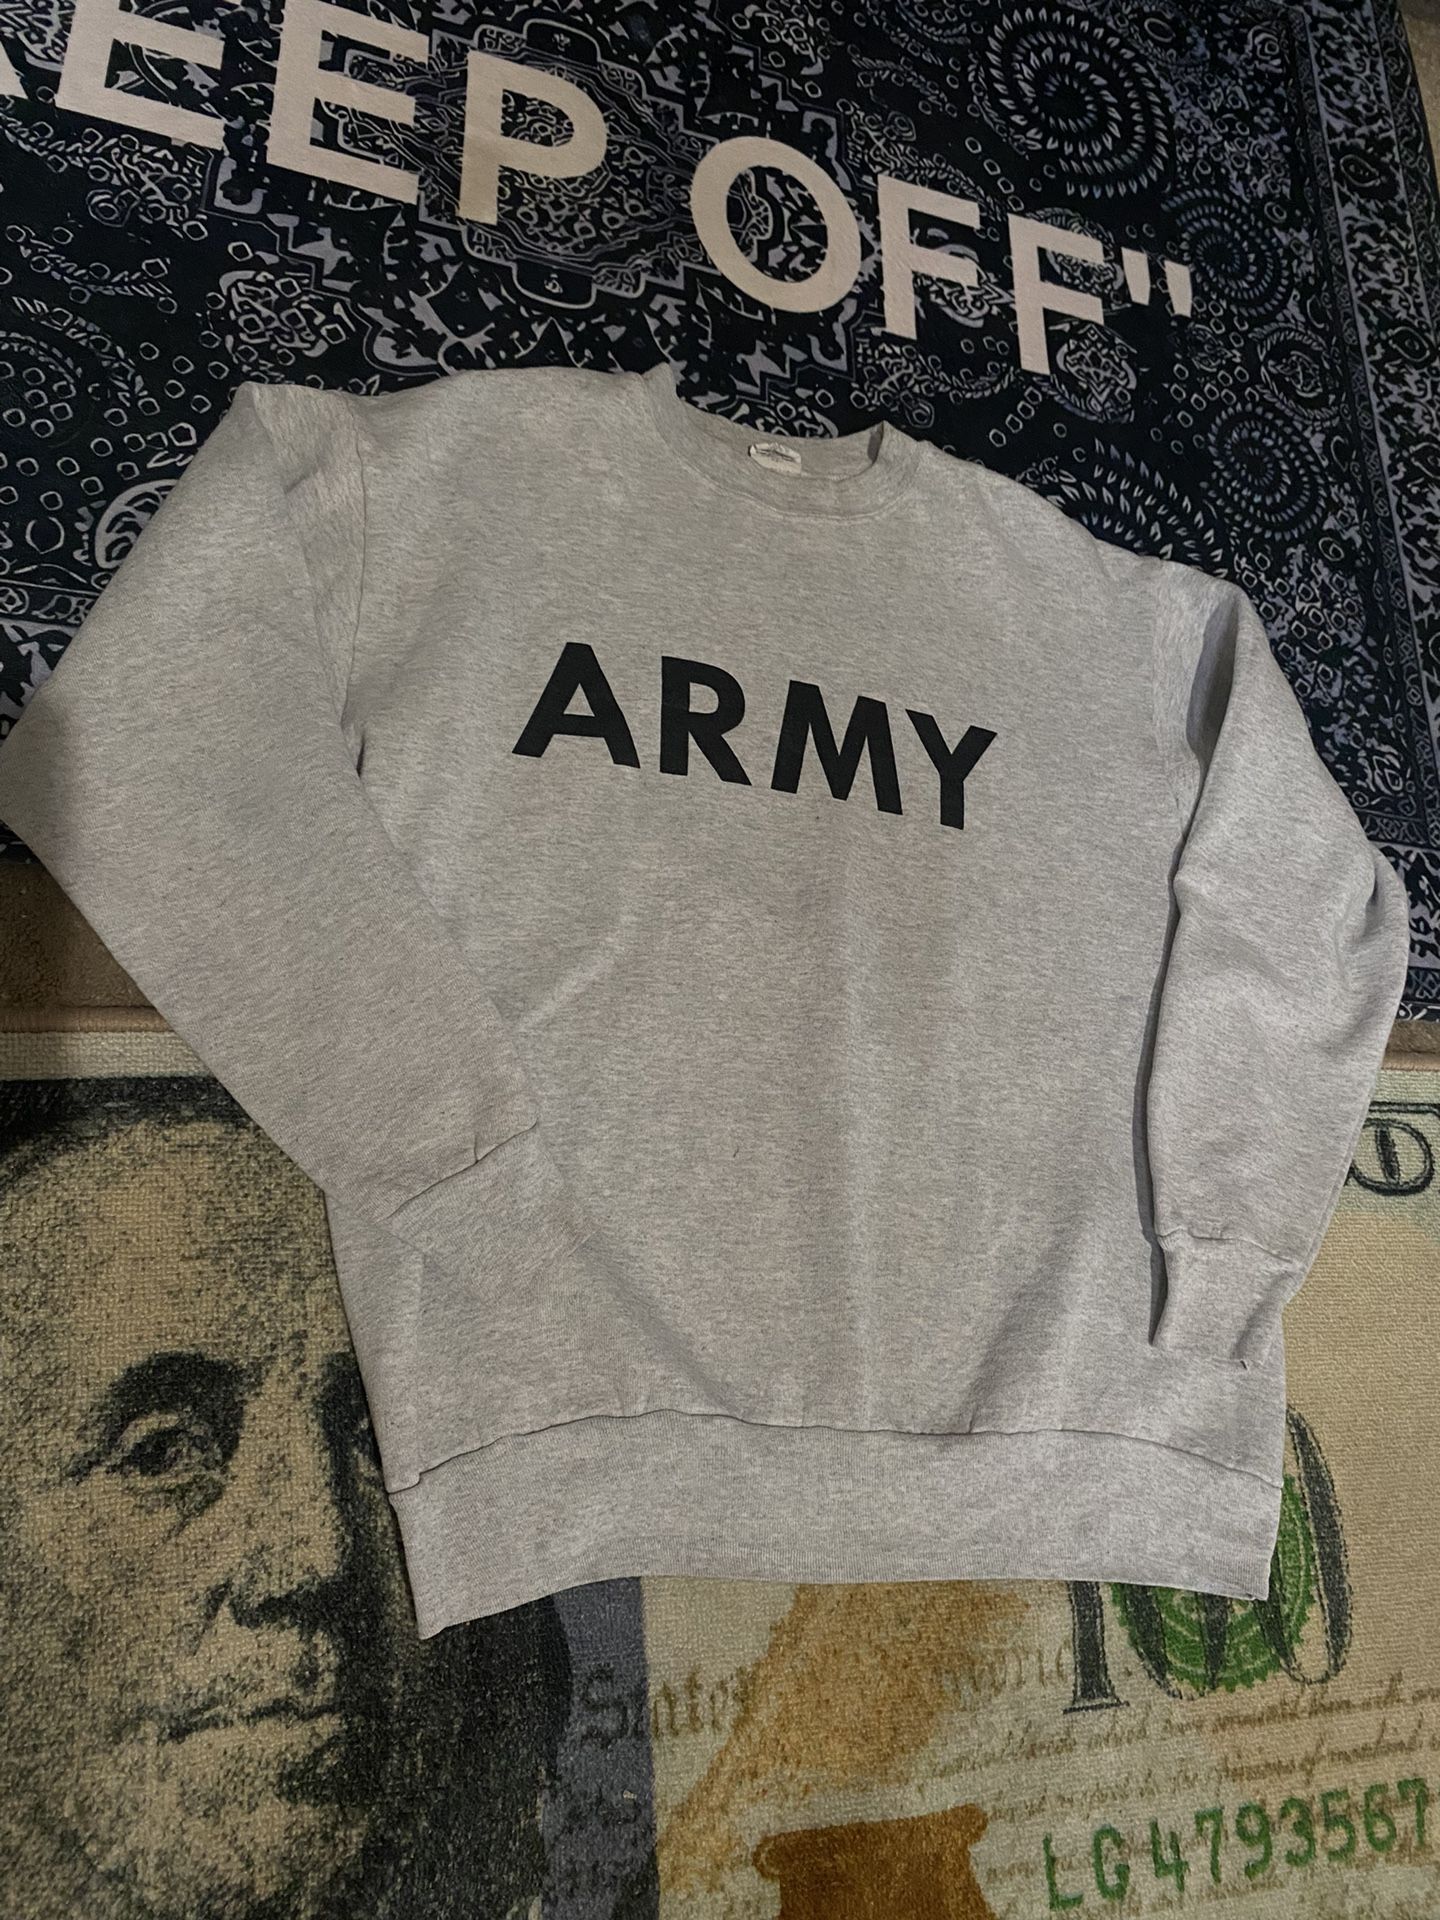 Army Sweatshirt 